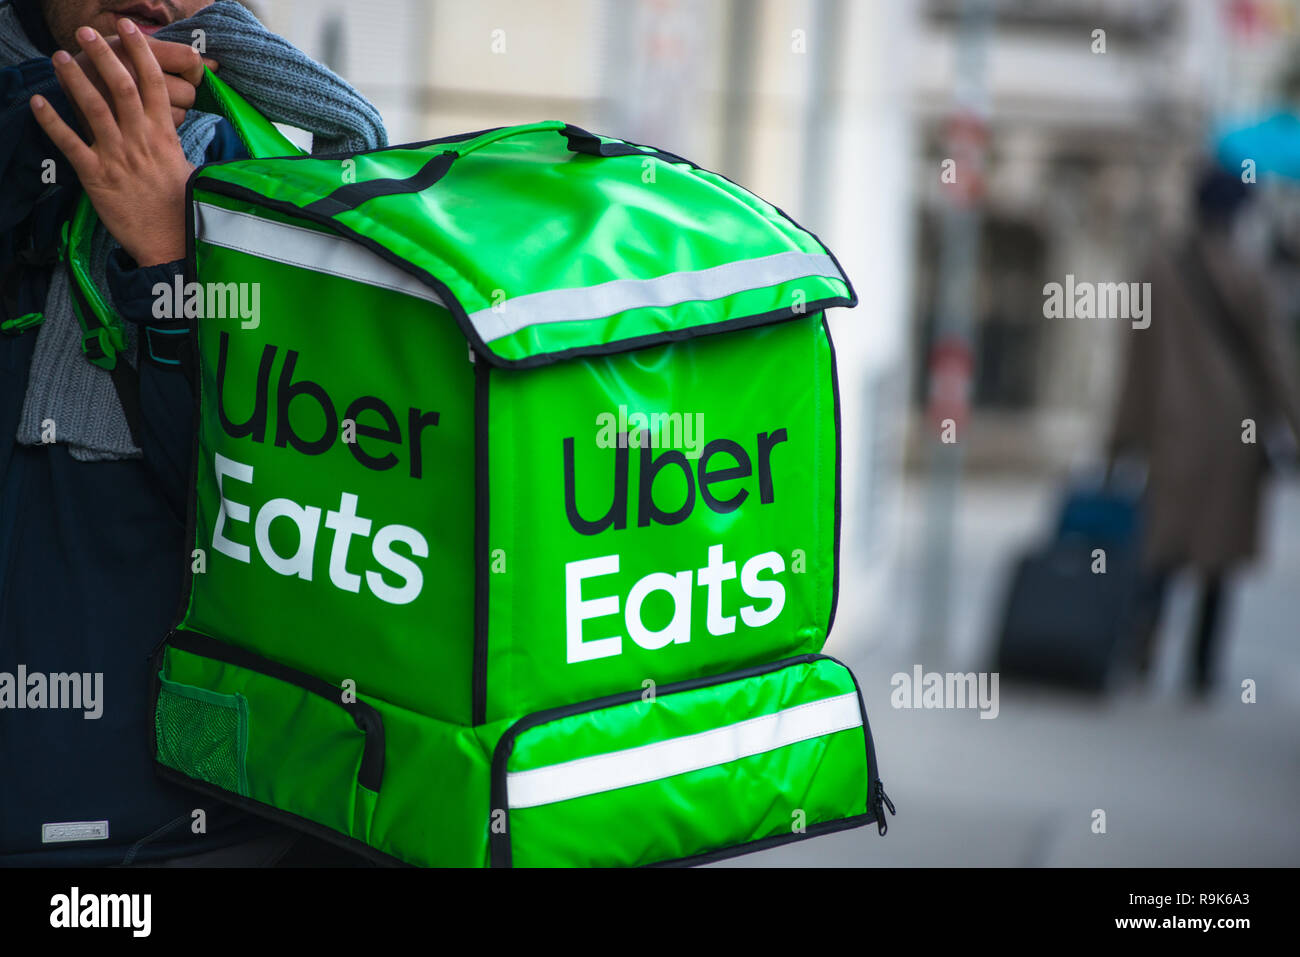 Uber Eats Stock Photos & Uber Eats Stock Images - Alamy1300 x 957